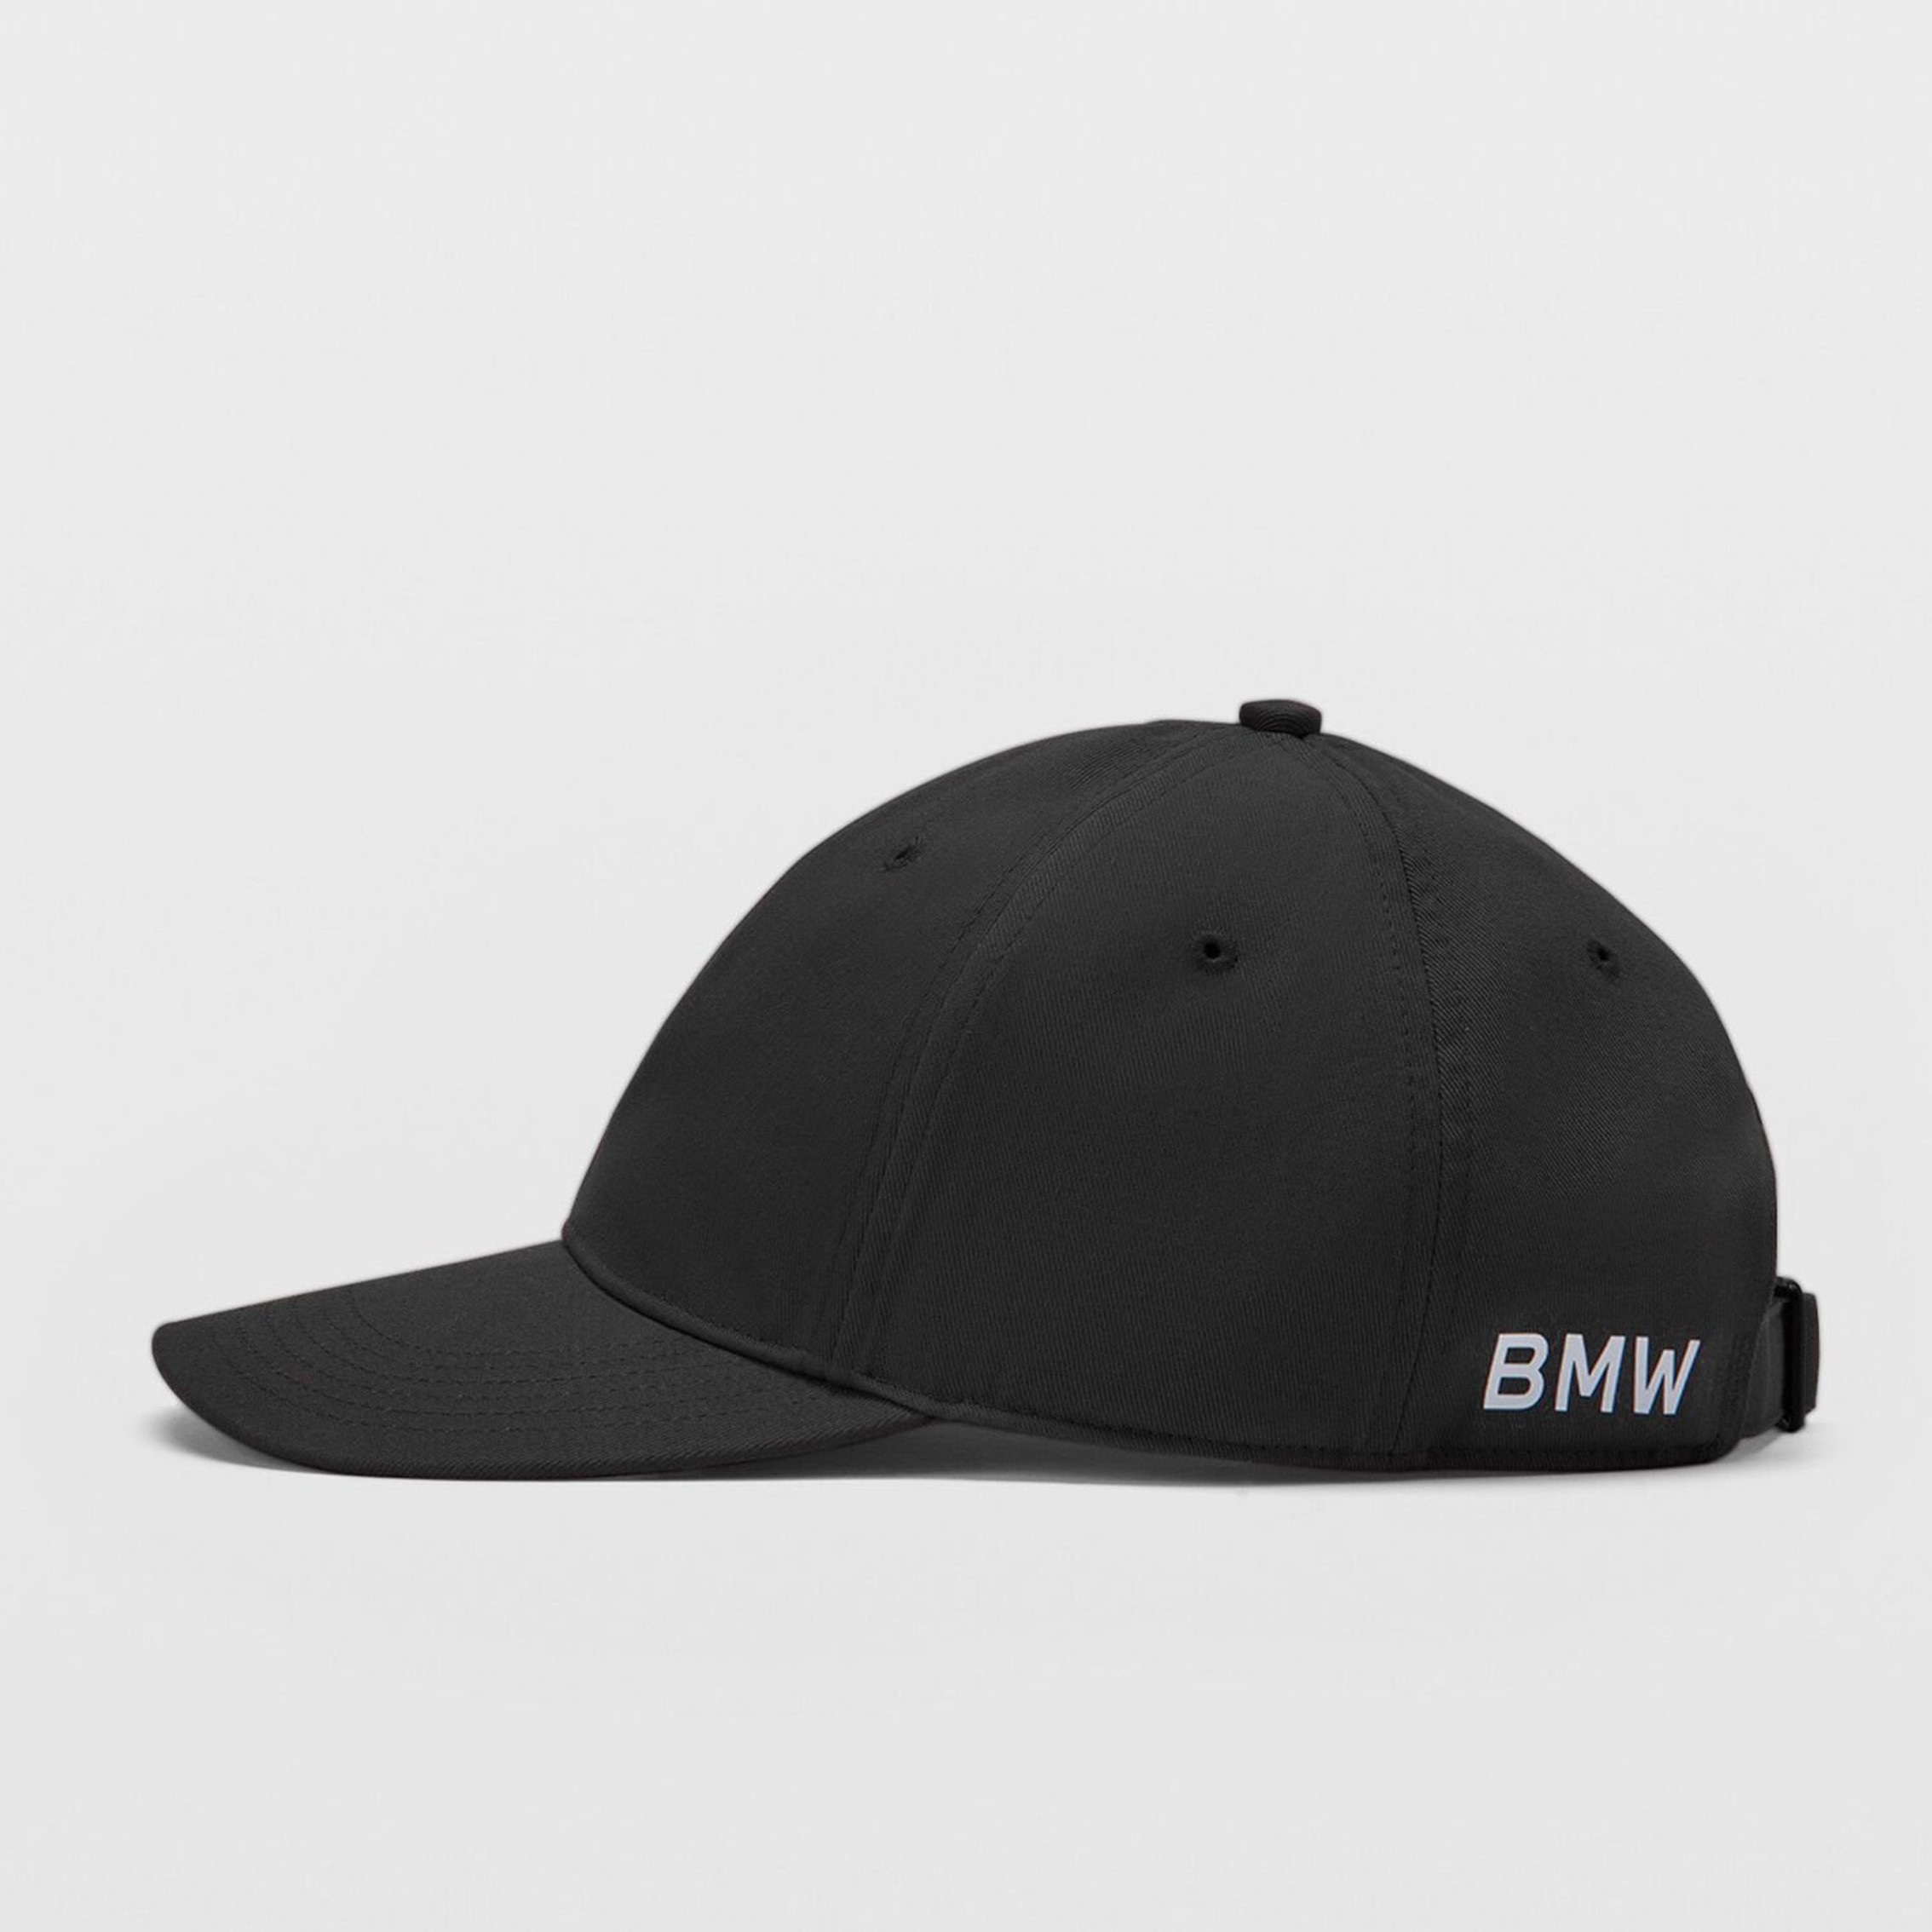 BMW老帽黑